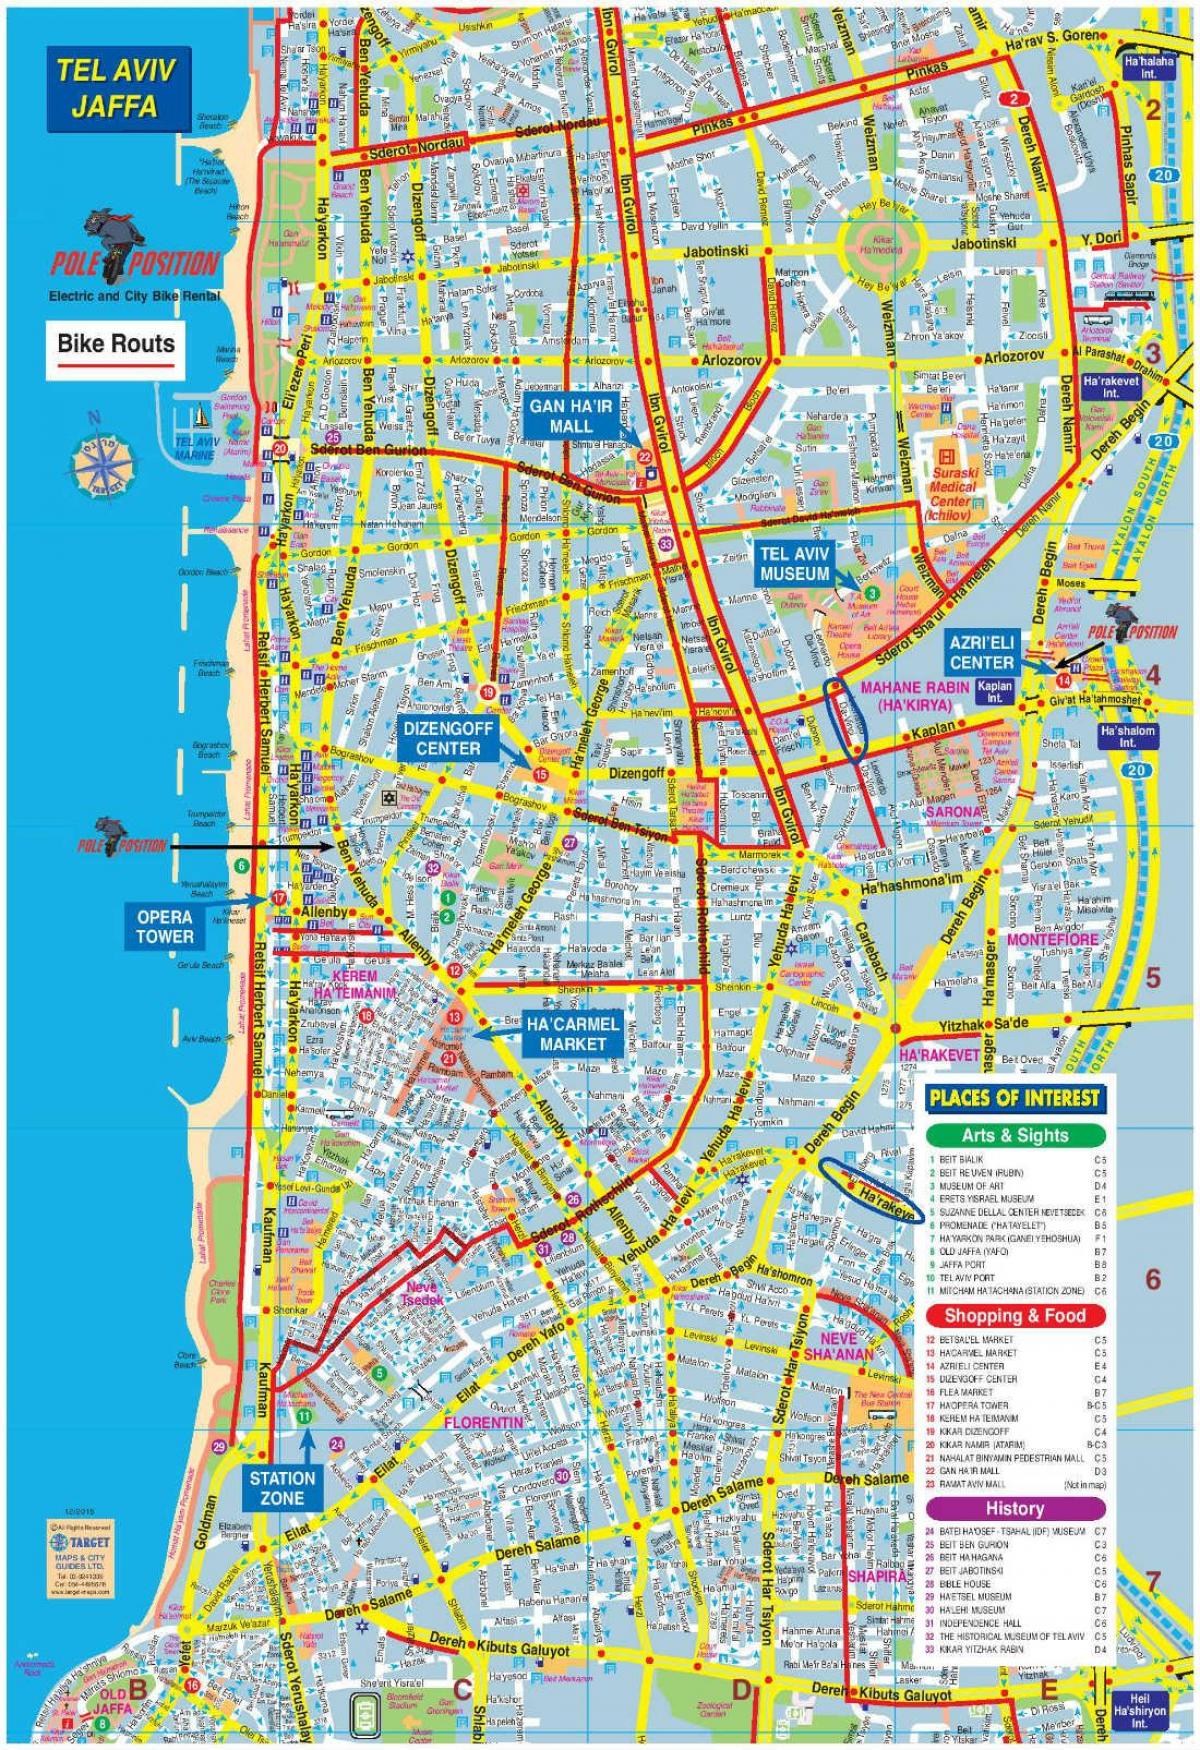 mapa de Tel Aviv moto